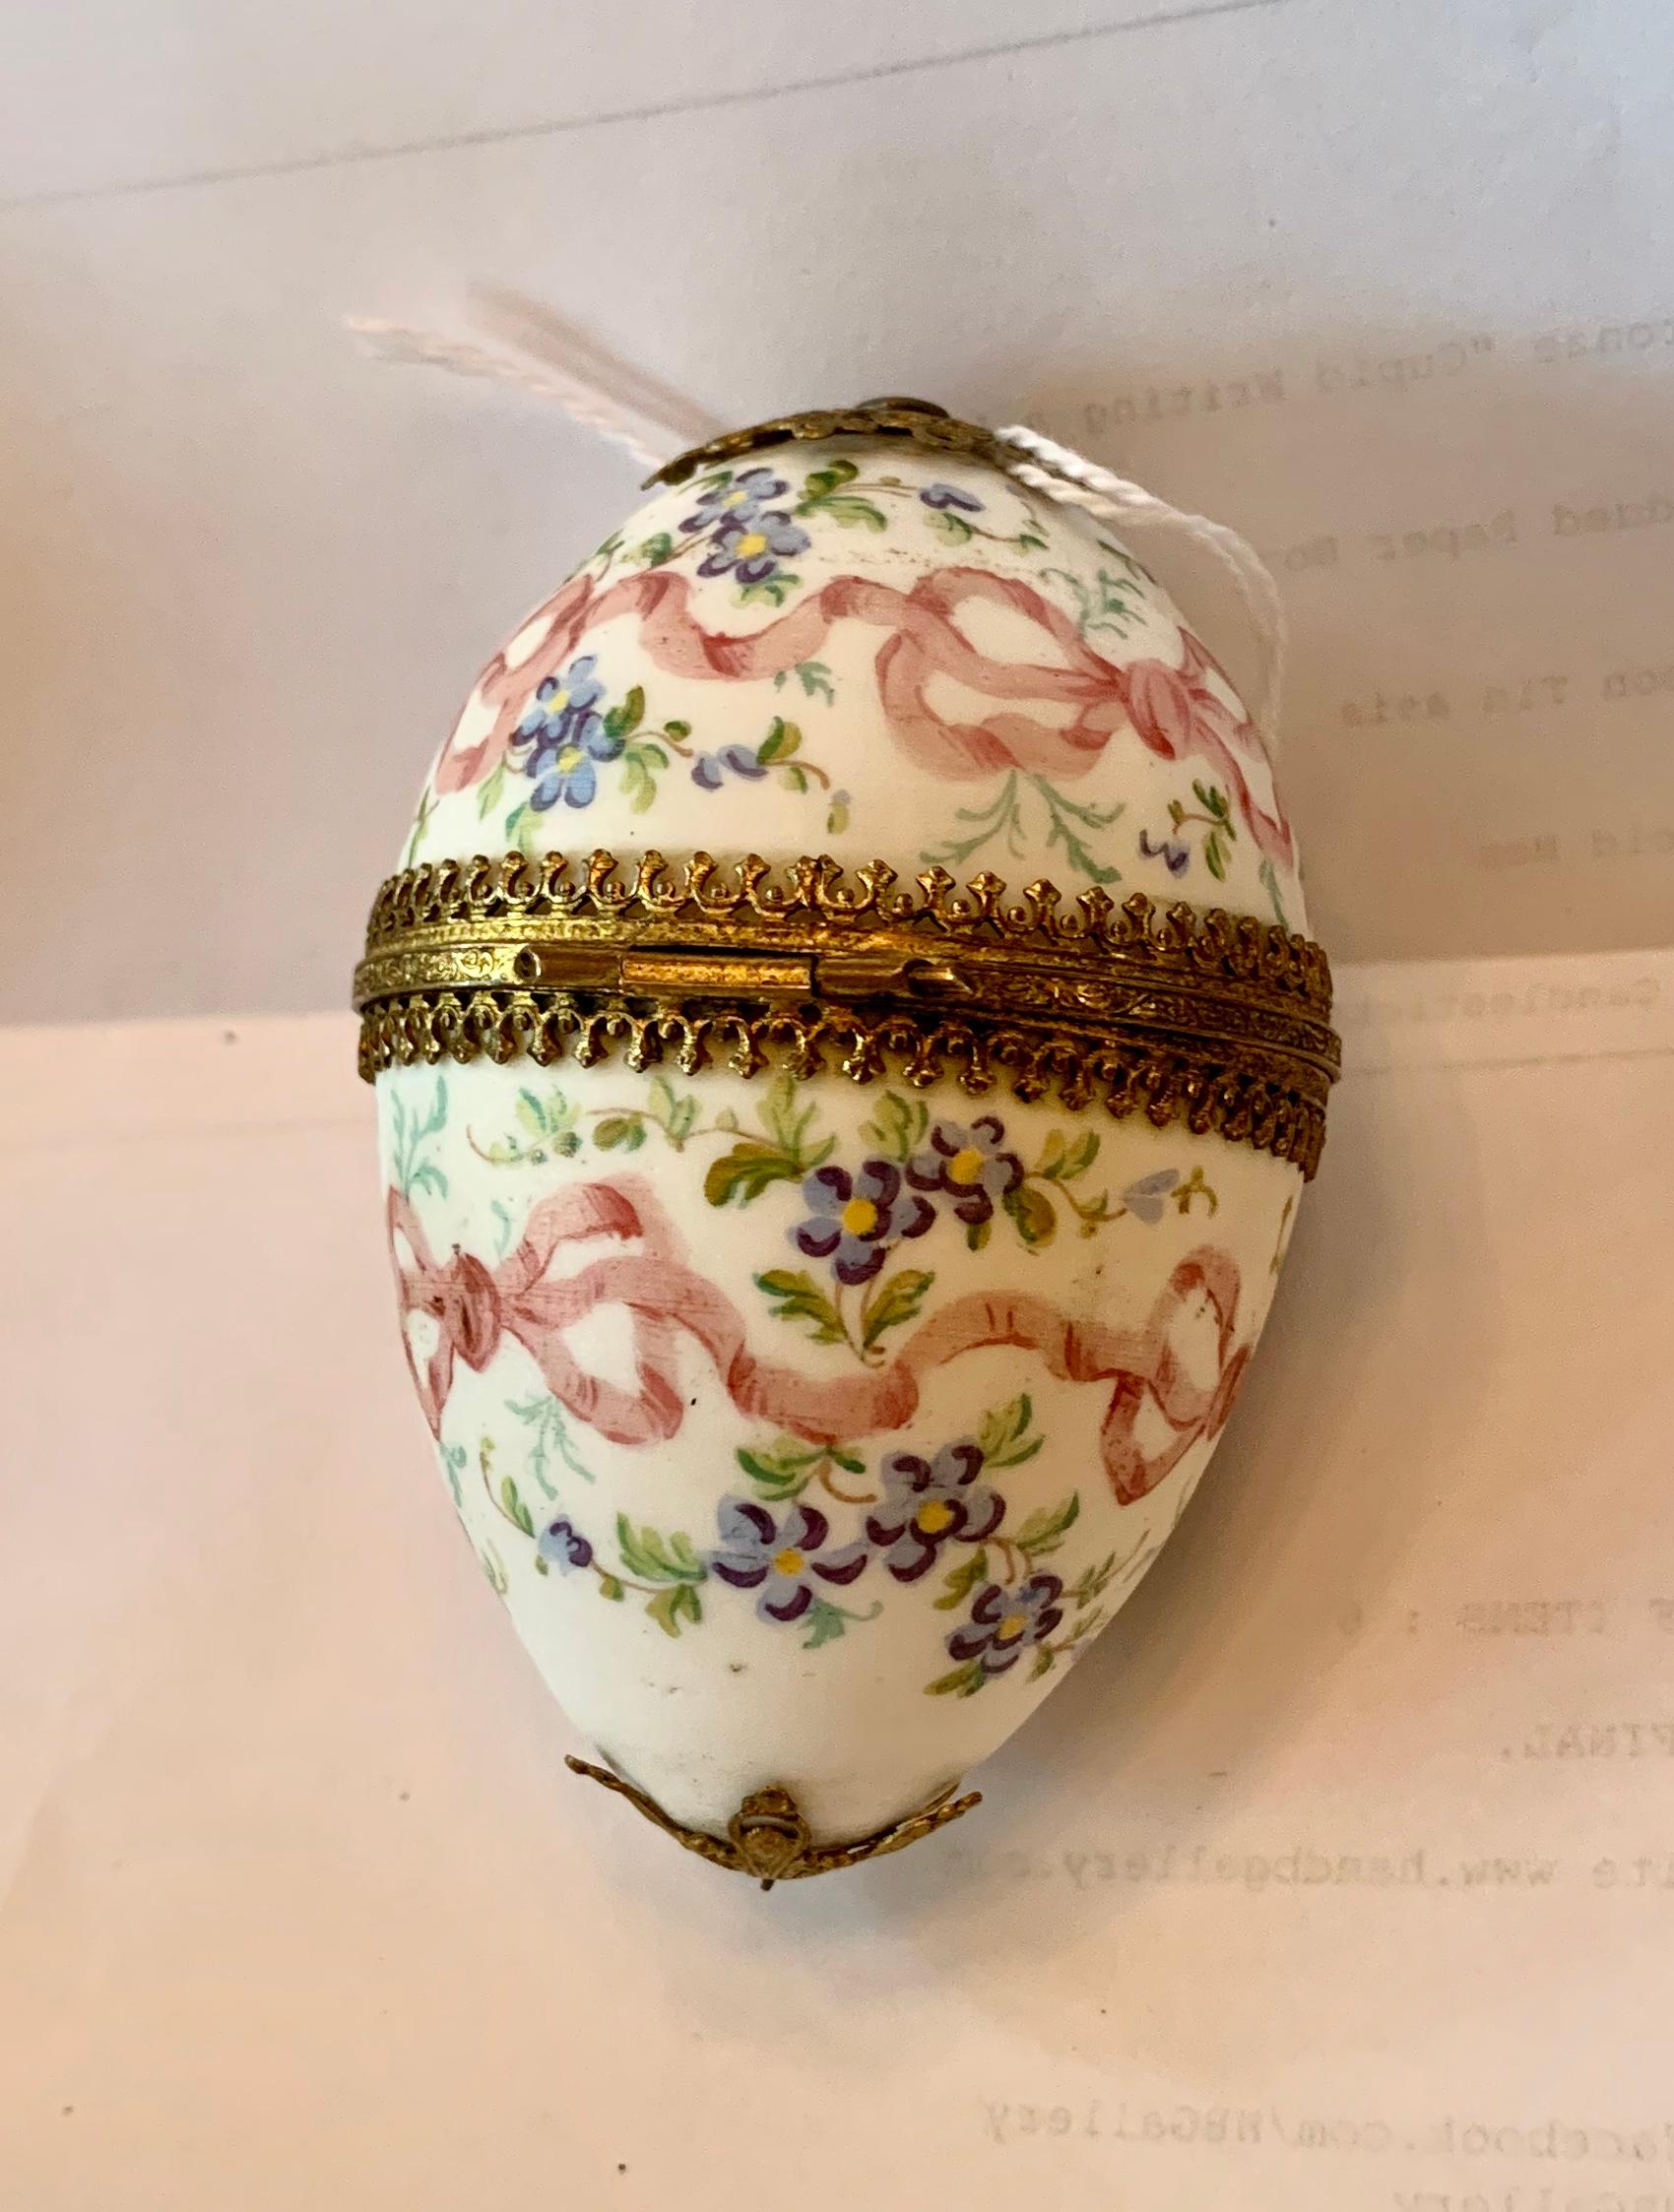 Dies ist eine atemberaubende antike Französisch Belle Epoque - viktorianischen Eierkarton in Porzellan mit vergoldeten Ormolu Montage und handgemalte Dekoration von rosa Bändern und Schleifen mit Vergissmeinnicht Blumen.  Die zarte romantische